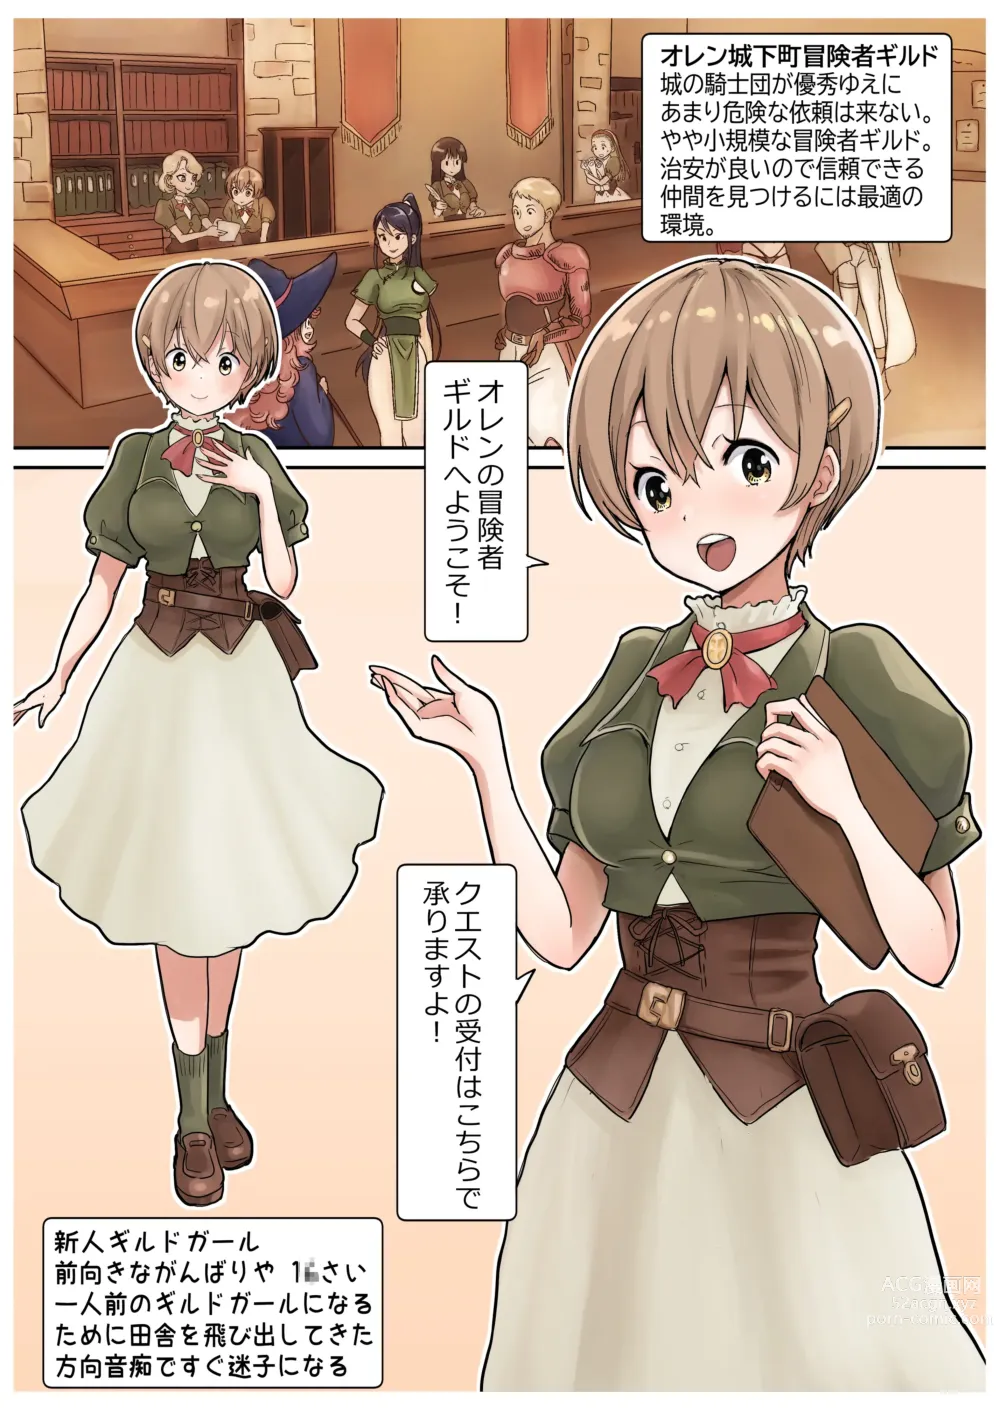 Page 28 of doujinshi RPG girls ❤︎ [NPC kan no shou] 1